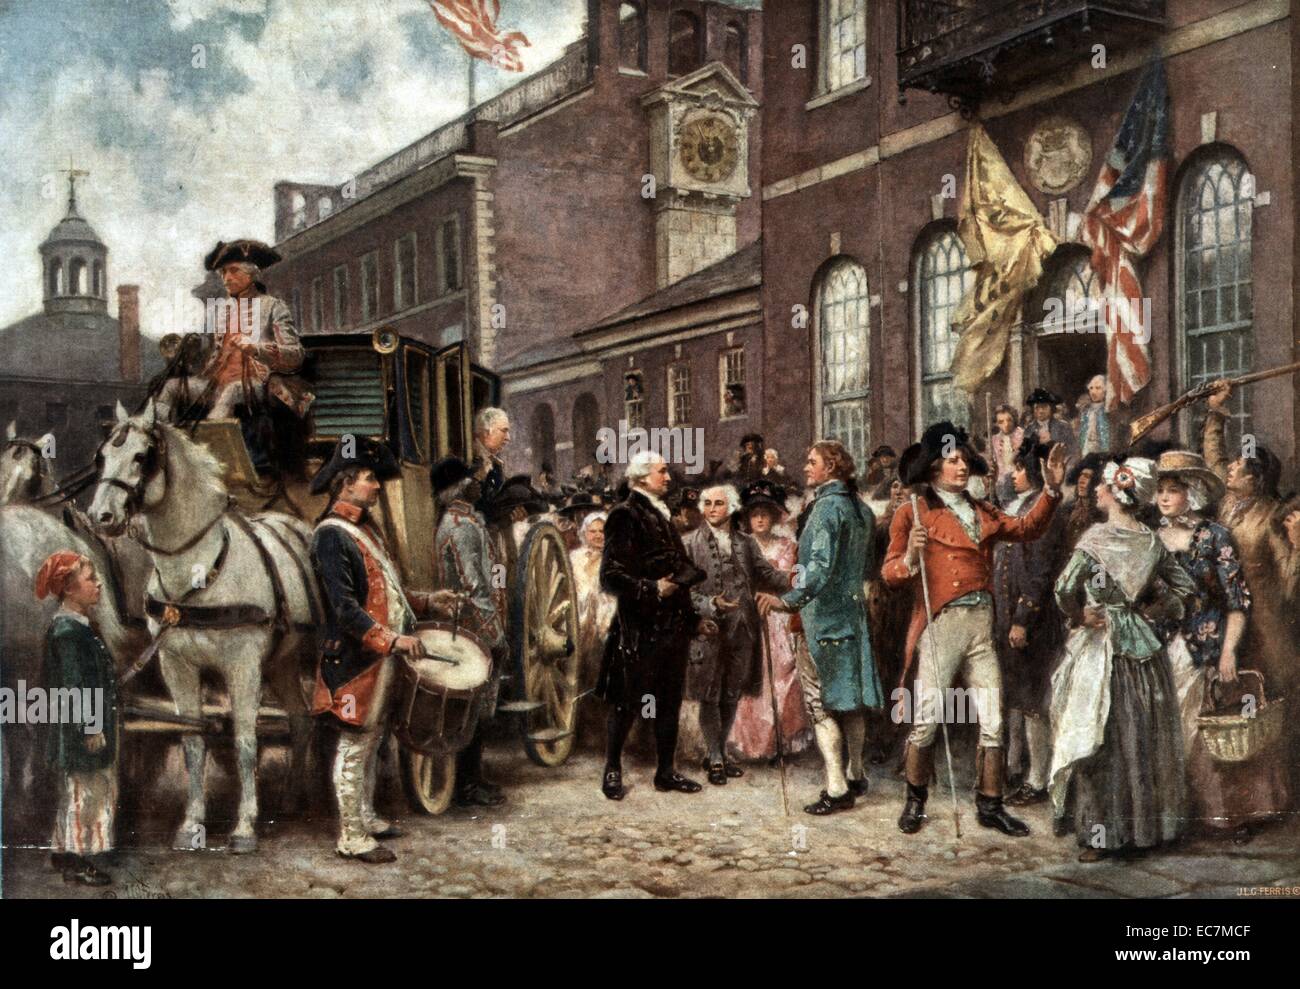 Inauguration de Washington à Philadelphie par J.L.G. Ferris. Imprimer montre George Washington arrivant à Salle des congrès à Philadelphie, le 4 mars 1793. Banque D'Images